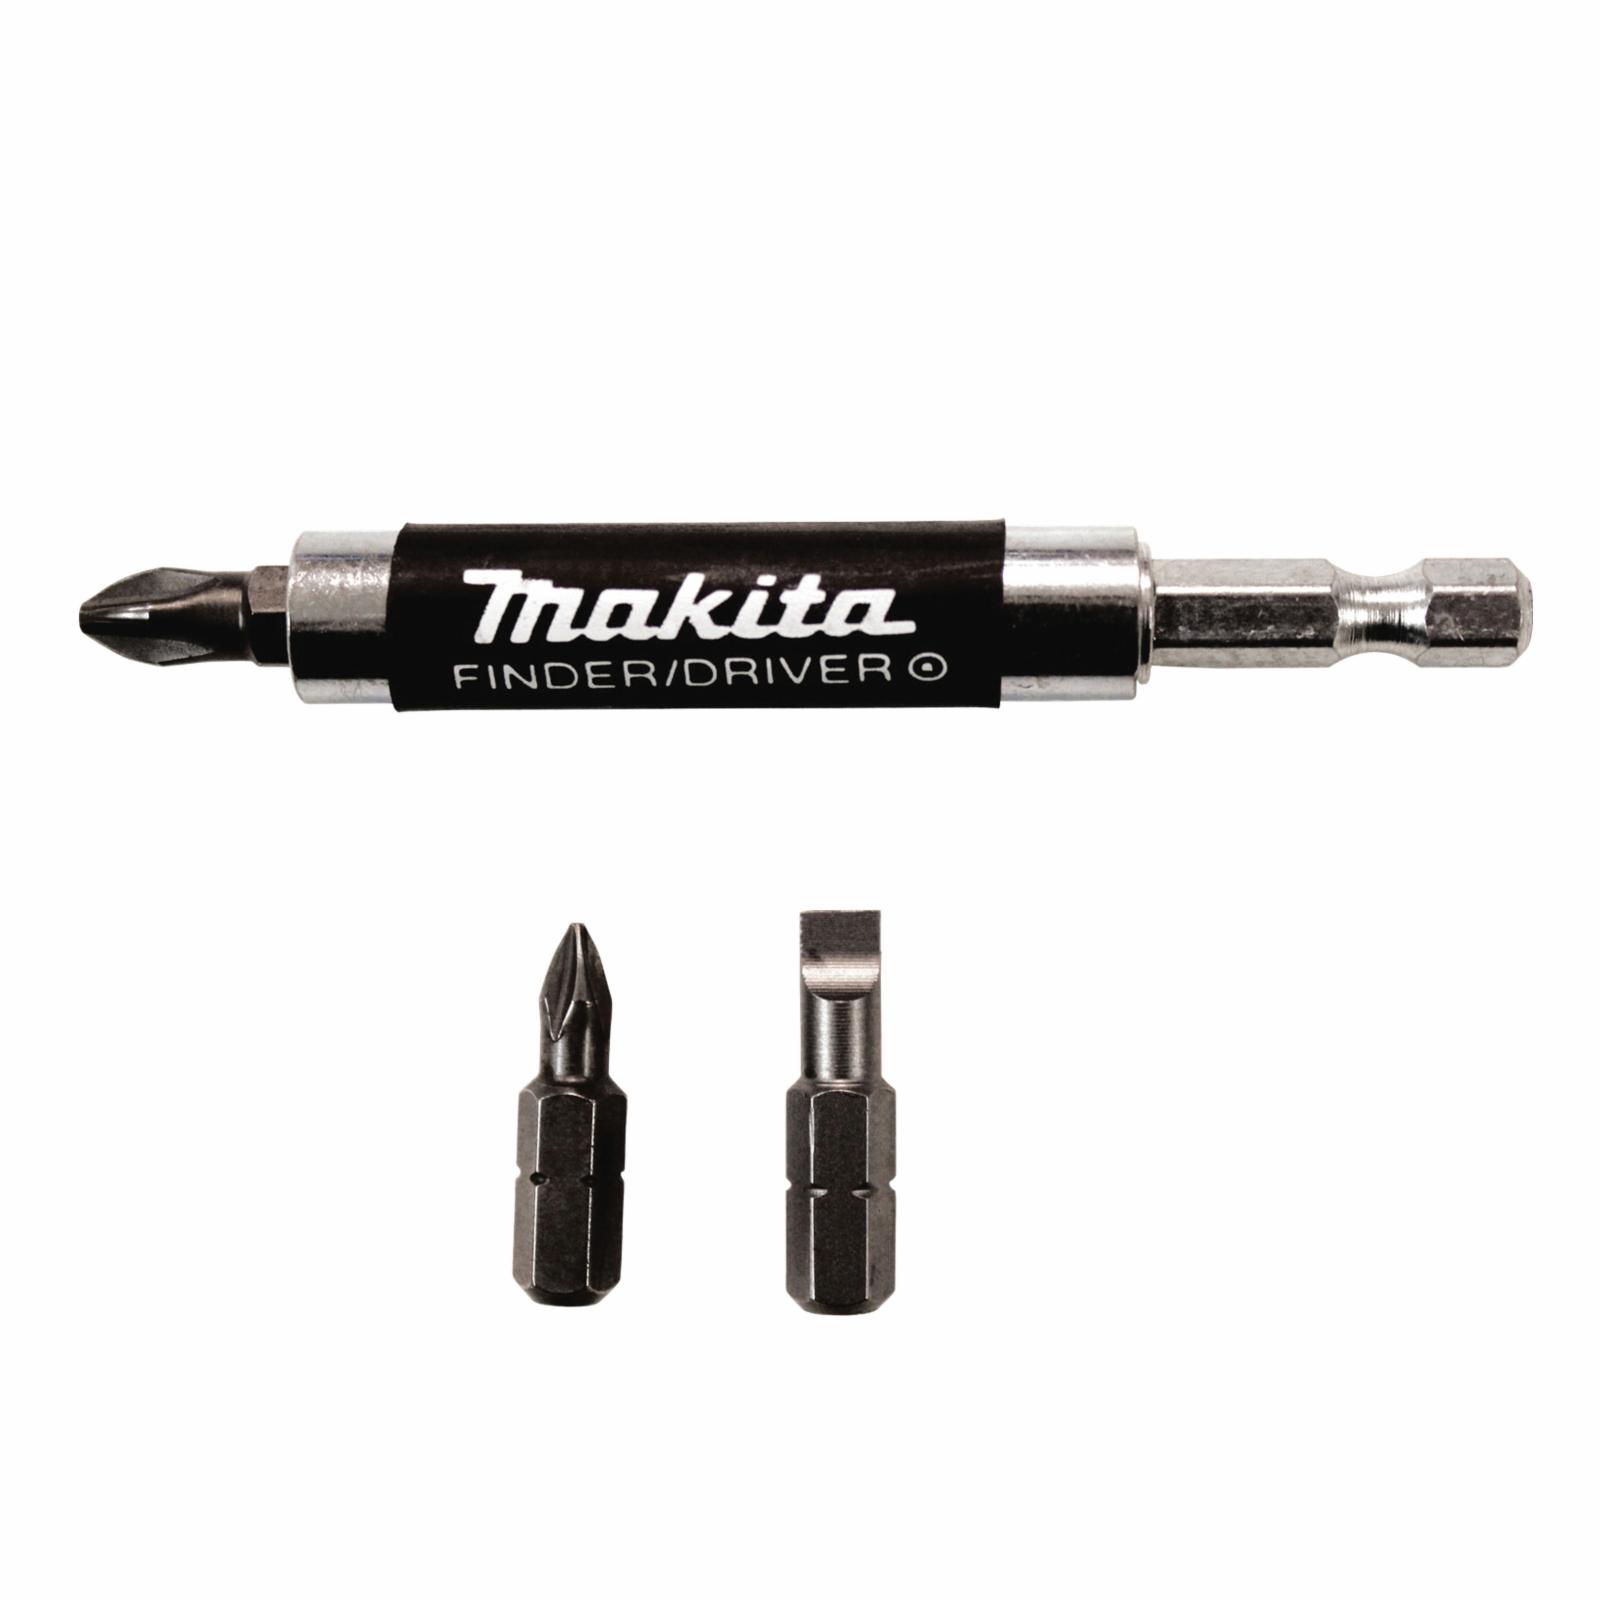 Makita® A-96095 General Purpose Saw Blade, 5-7/8 in Dia Blade, 5/8 in Arbor/Shank